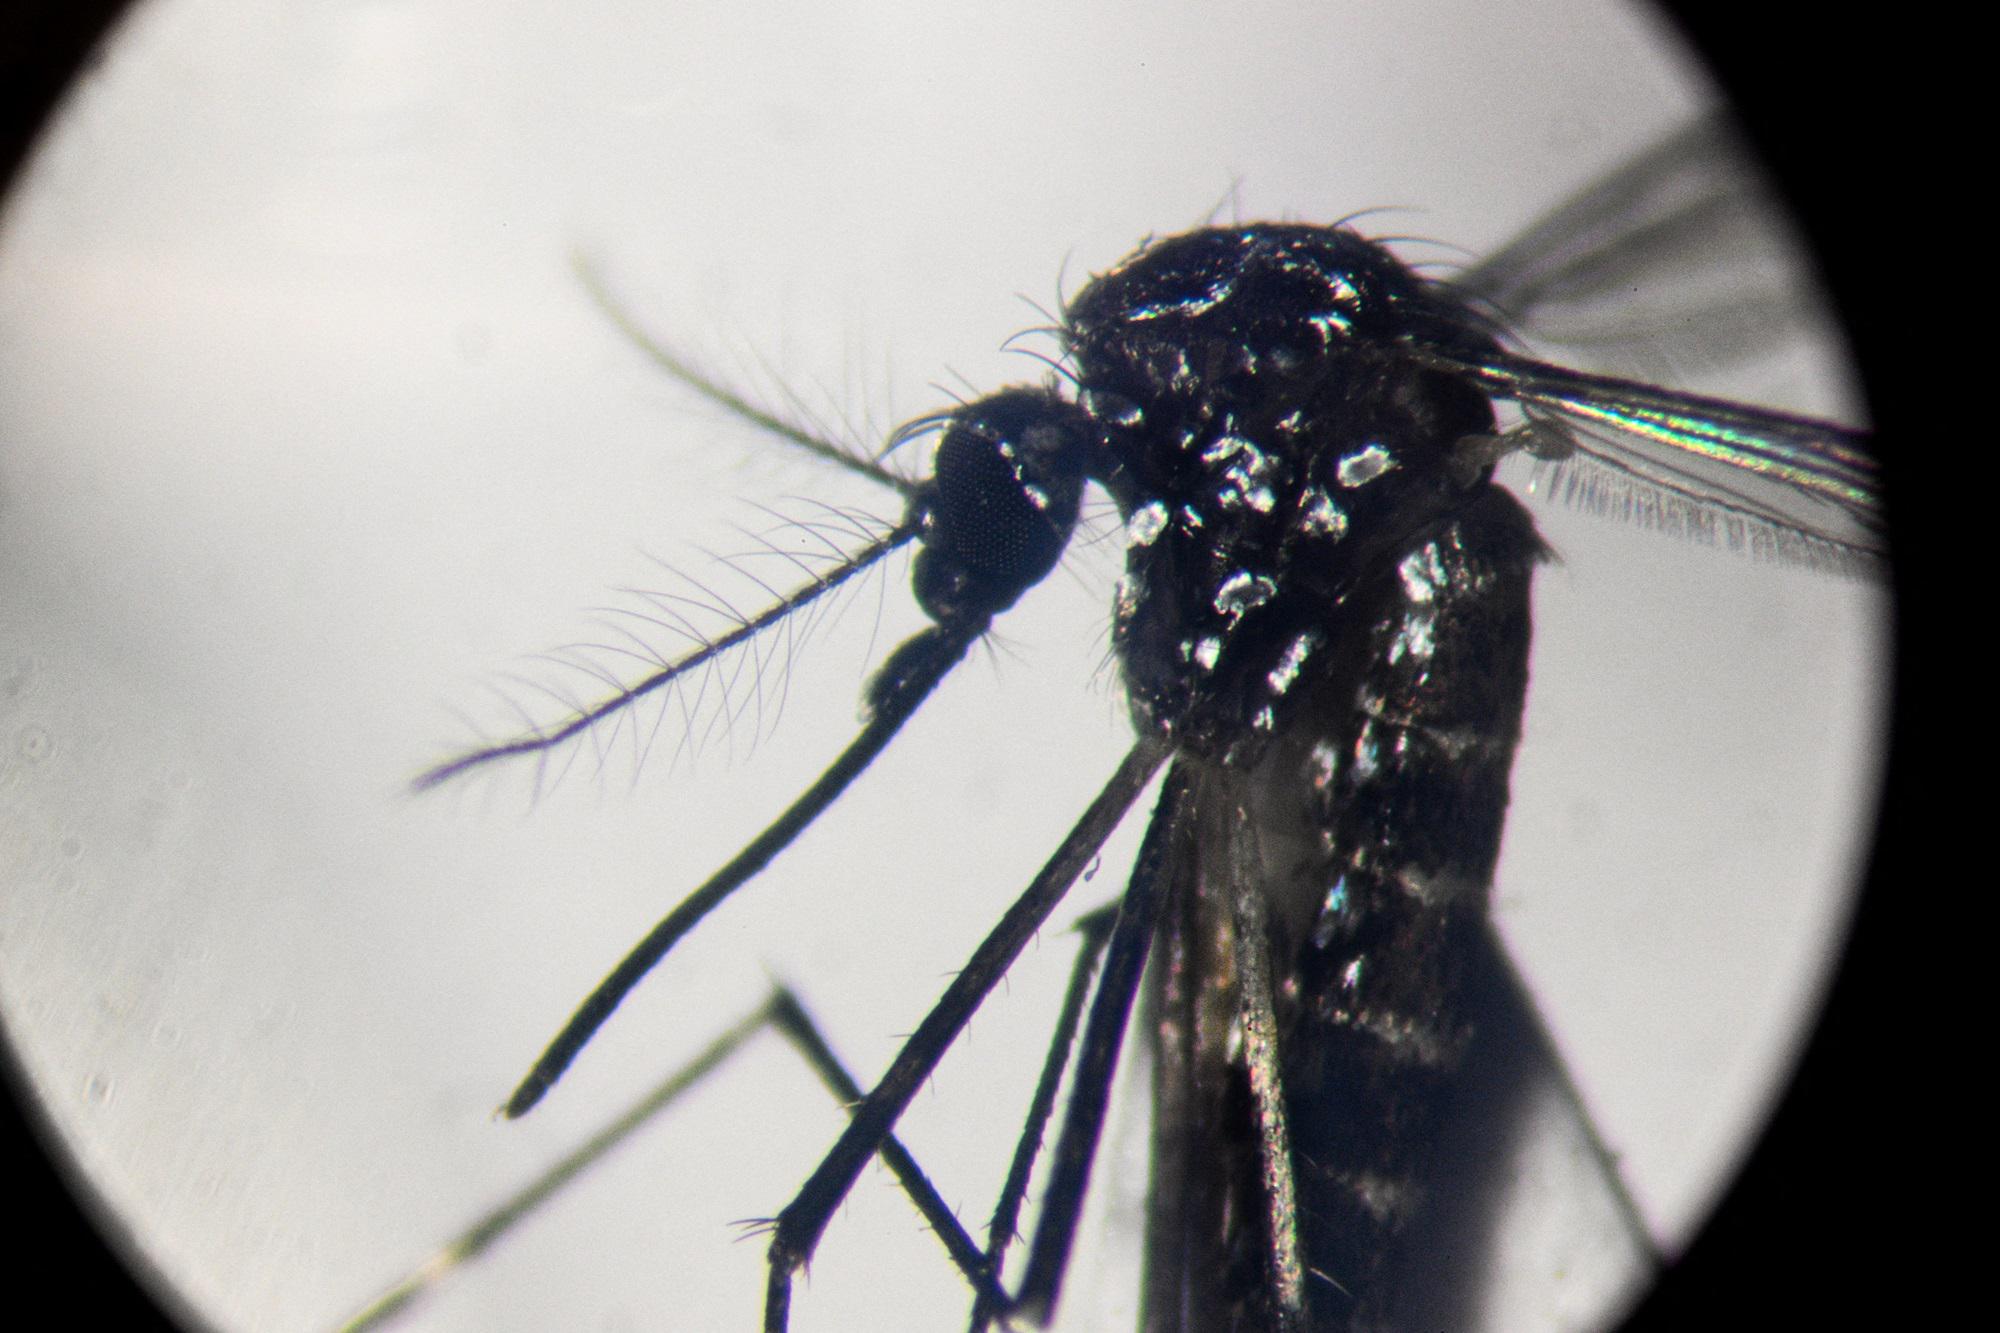 Dengue - Iss: in Italia 259 casi da inizio anno - tutti importati